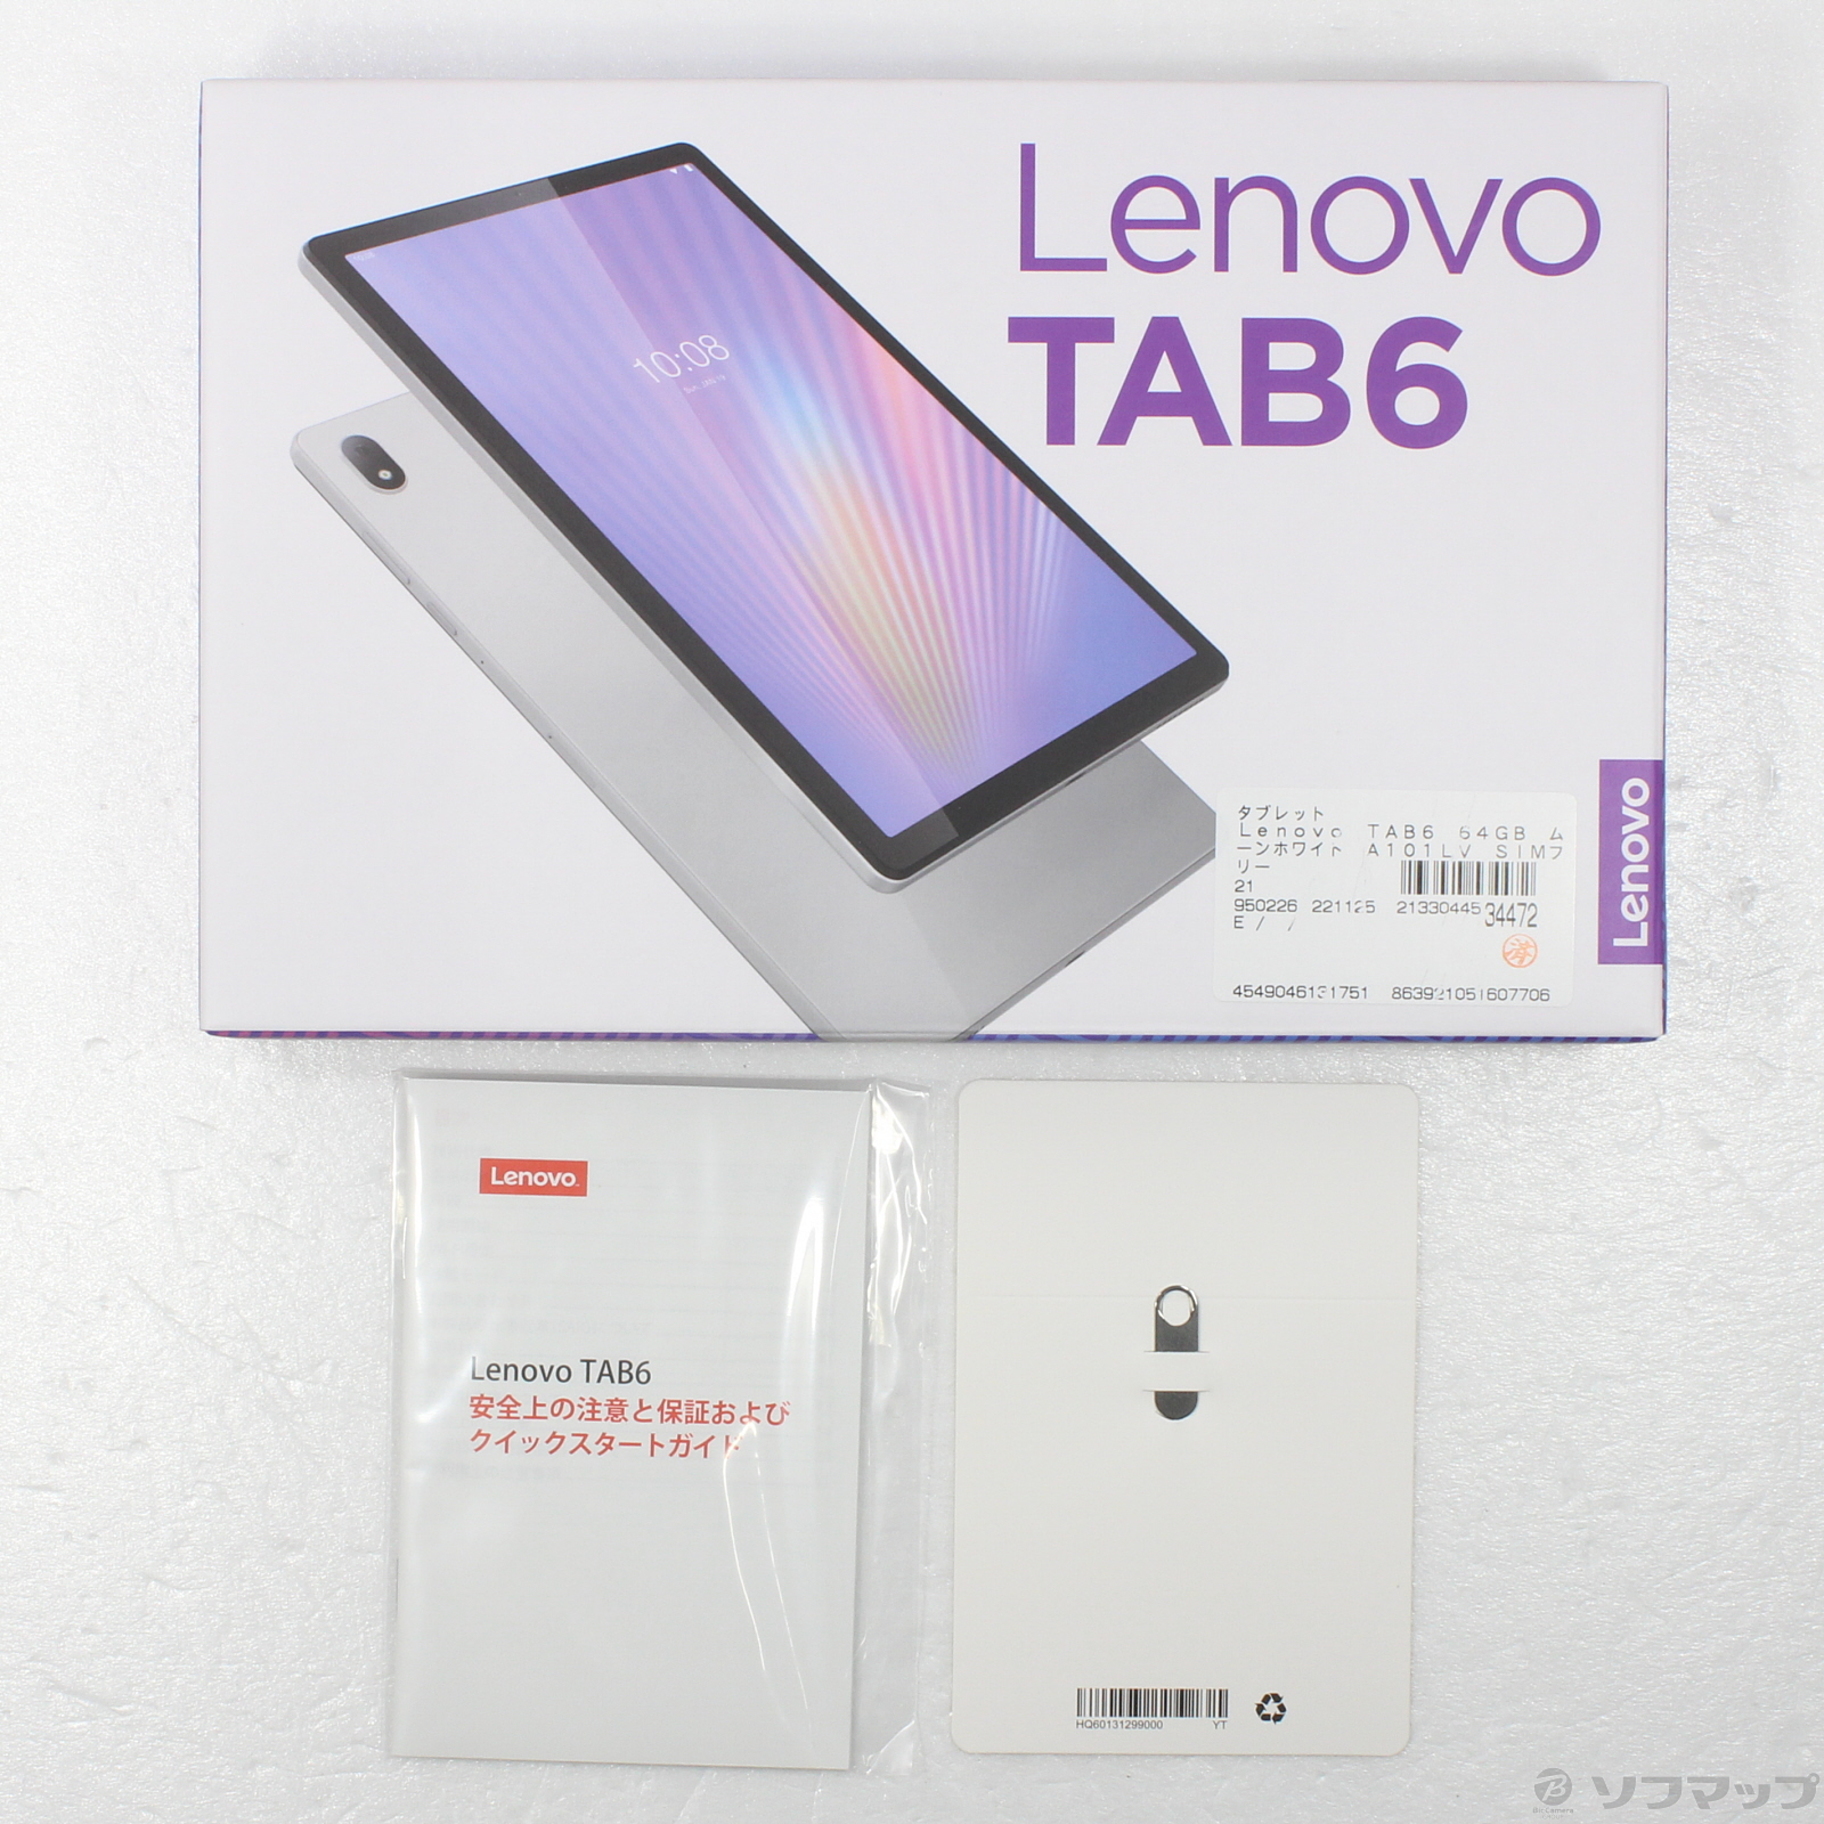 Lenovoタブ6 ムーンホワイト 白 タブレット 5G対応 iPad レノボ+